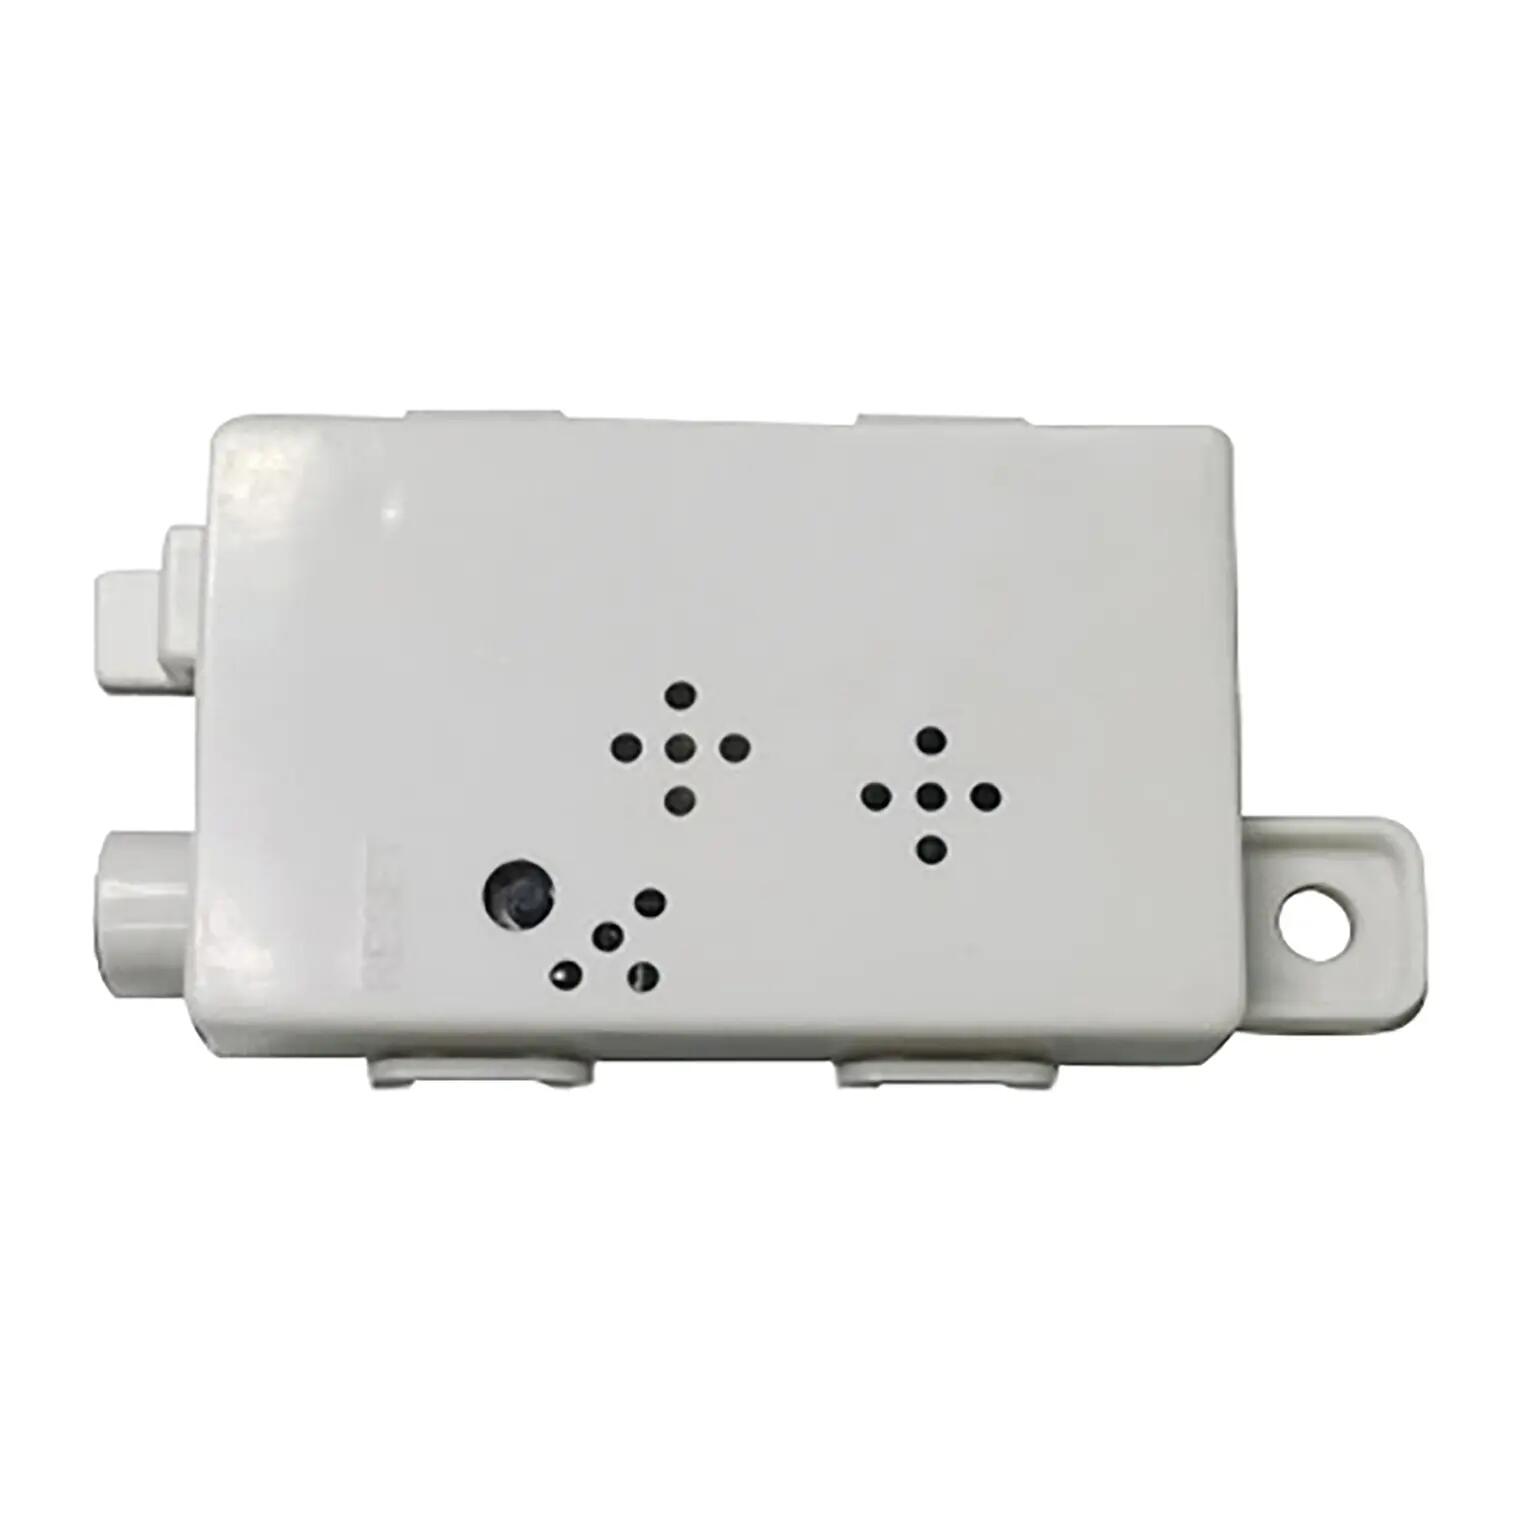 Modulo wifi DAIKIN BRP069B45 controller per climatizzatore